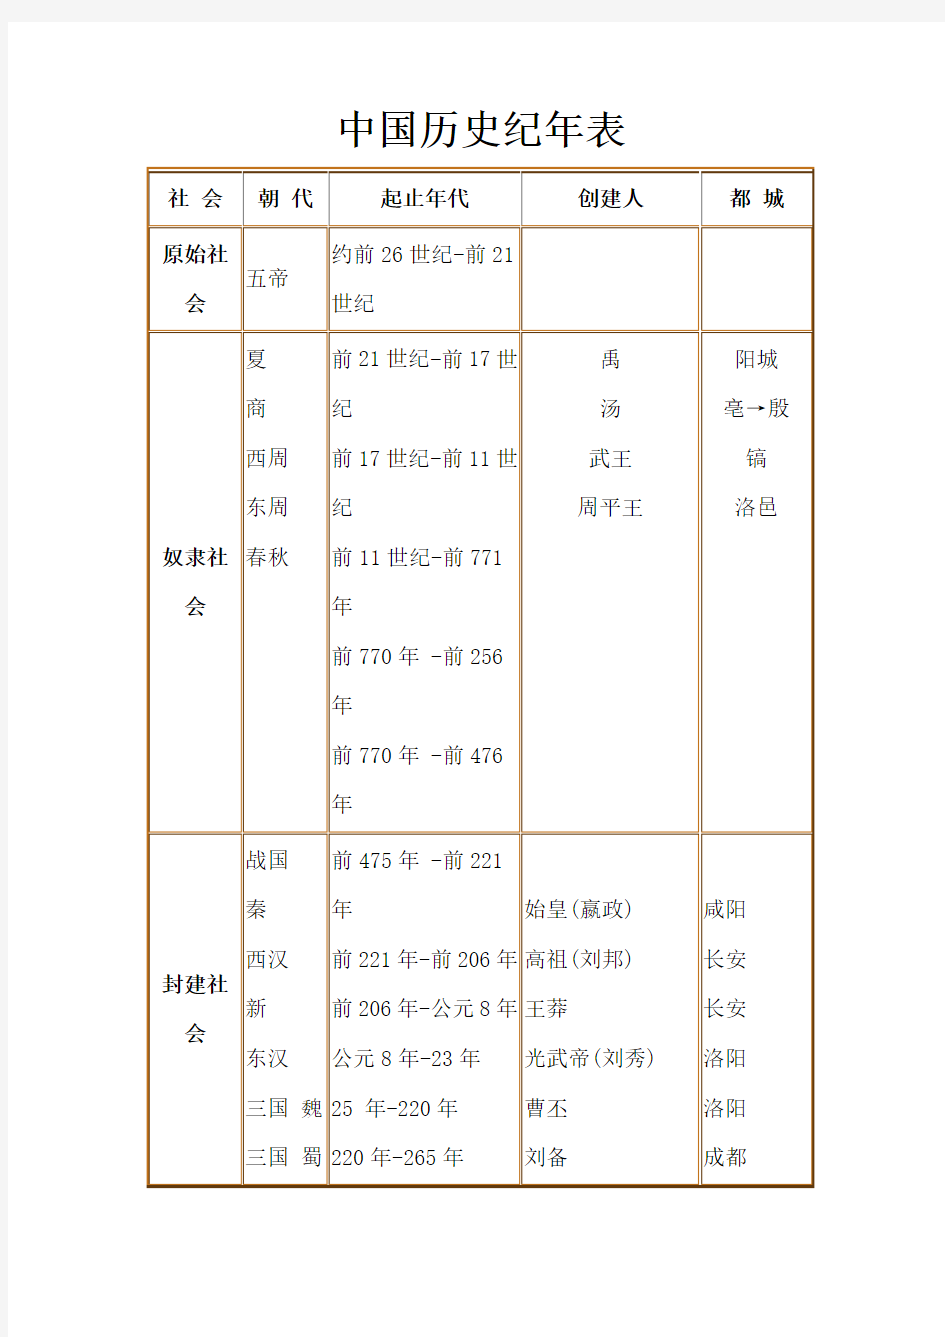 中国历史纪年表